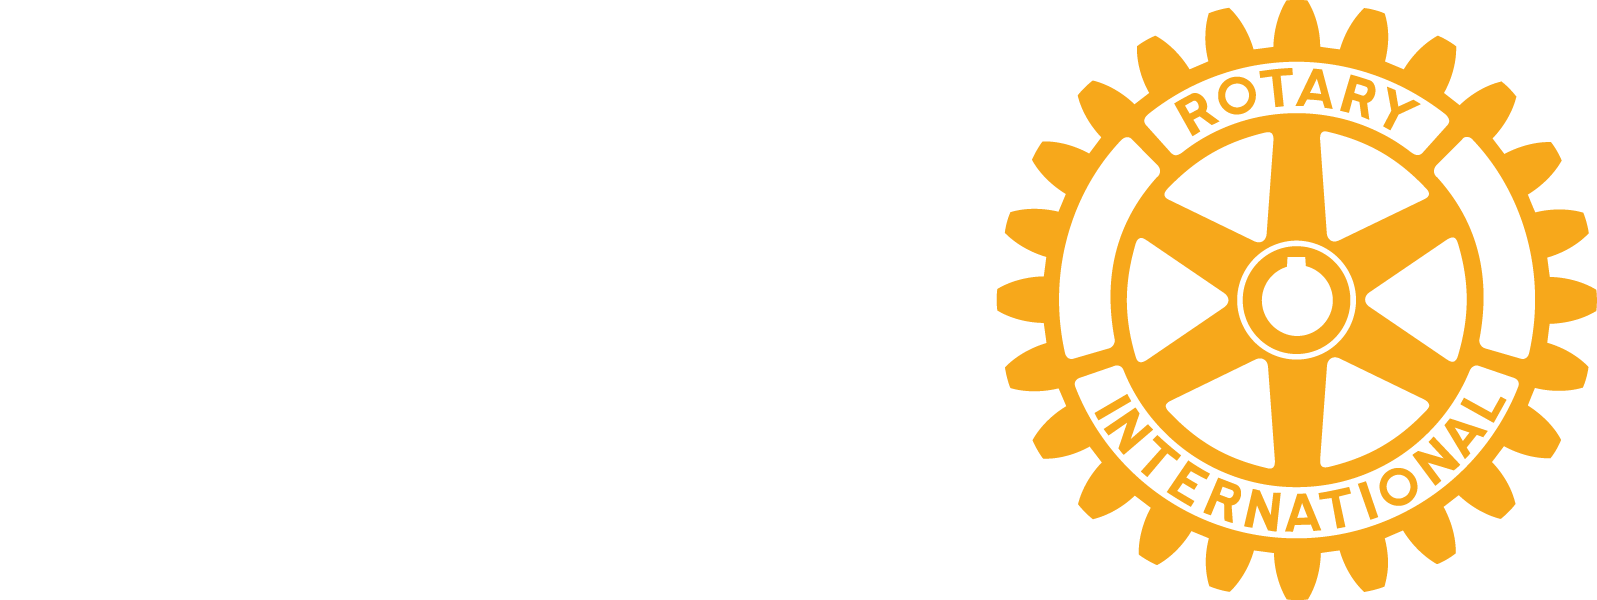 Rotary Masterbrand - White & Gold